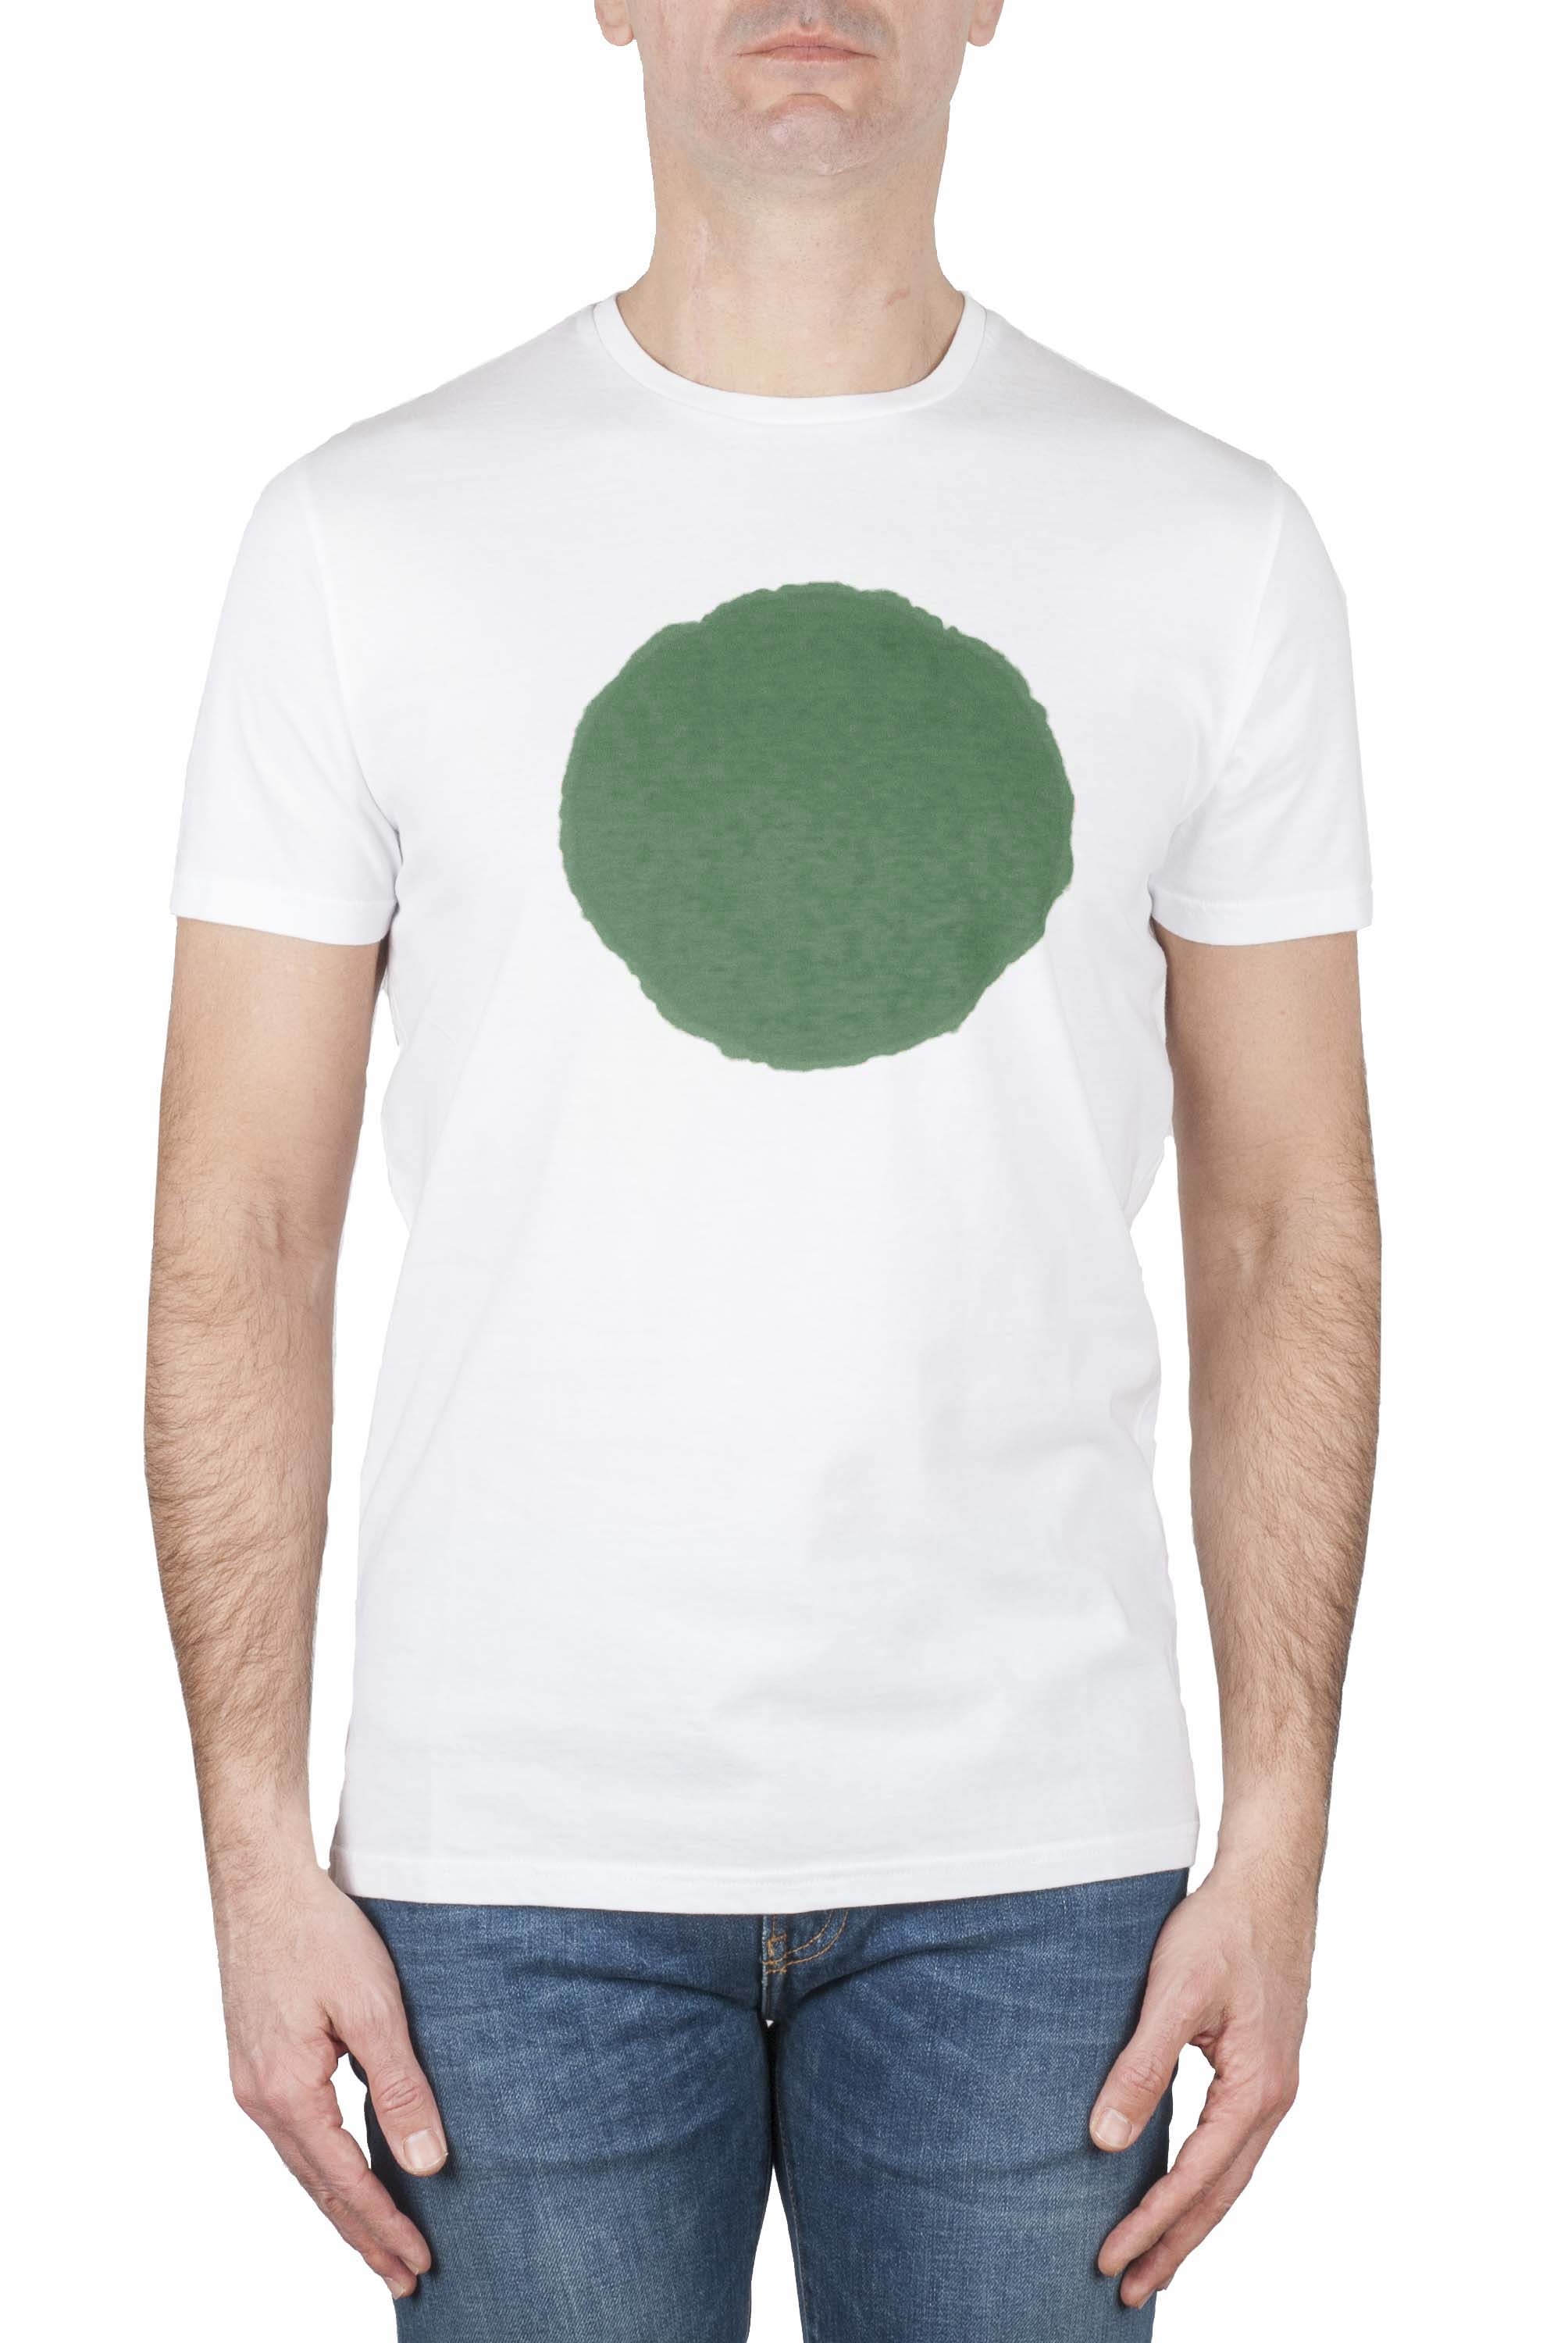 SBU 01920_19AW Clásica camiseta de cuello redondo manga corta de algodón verde y blanca gráfica impresa 01